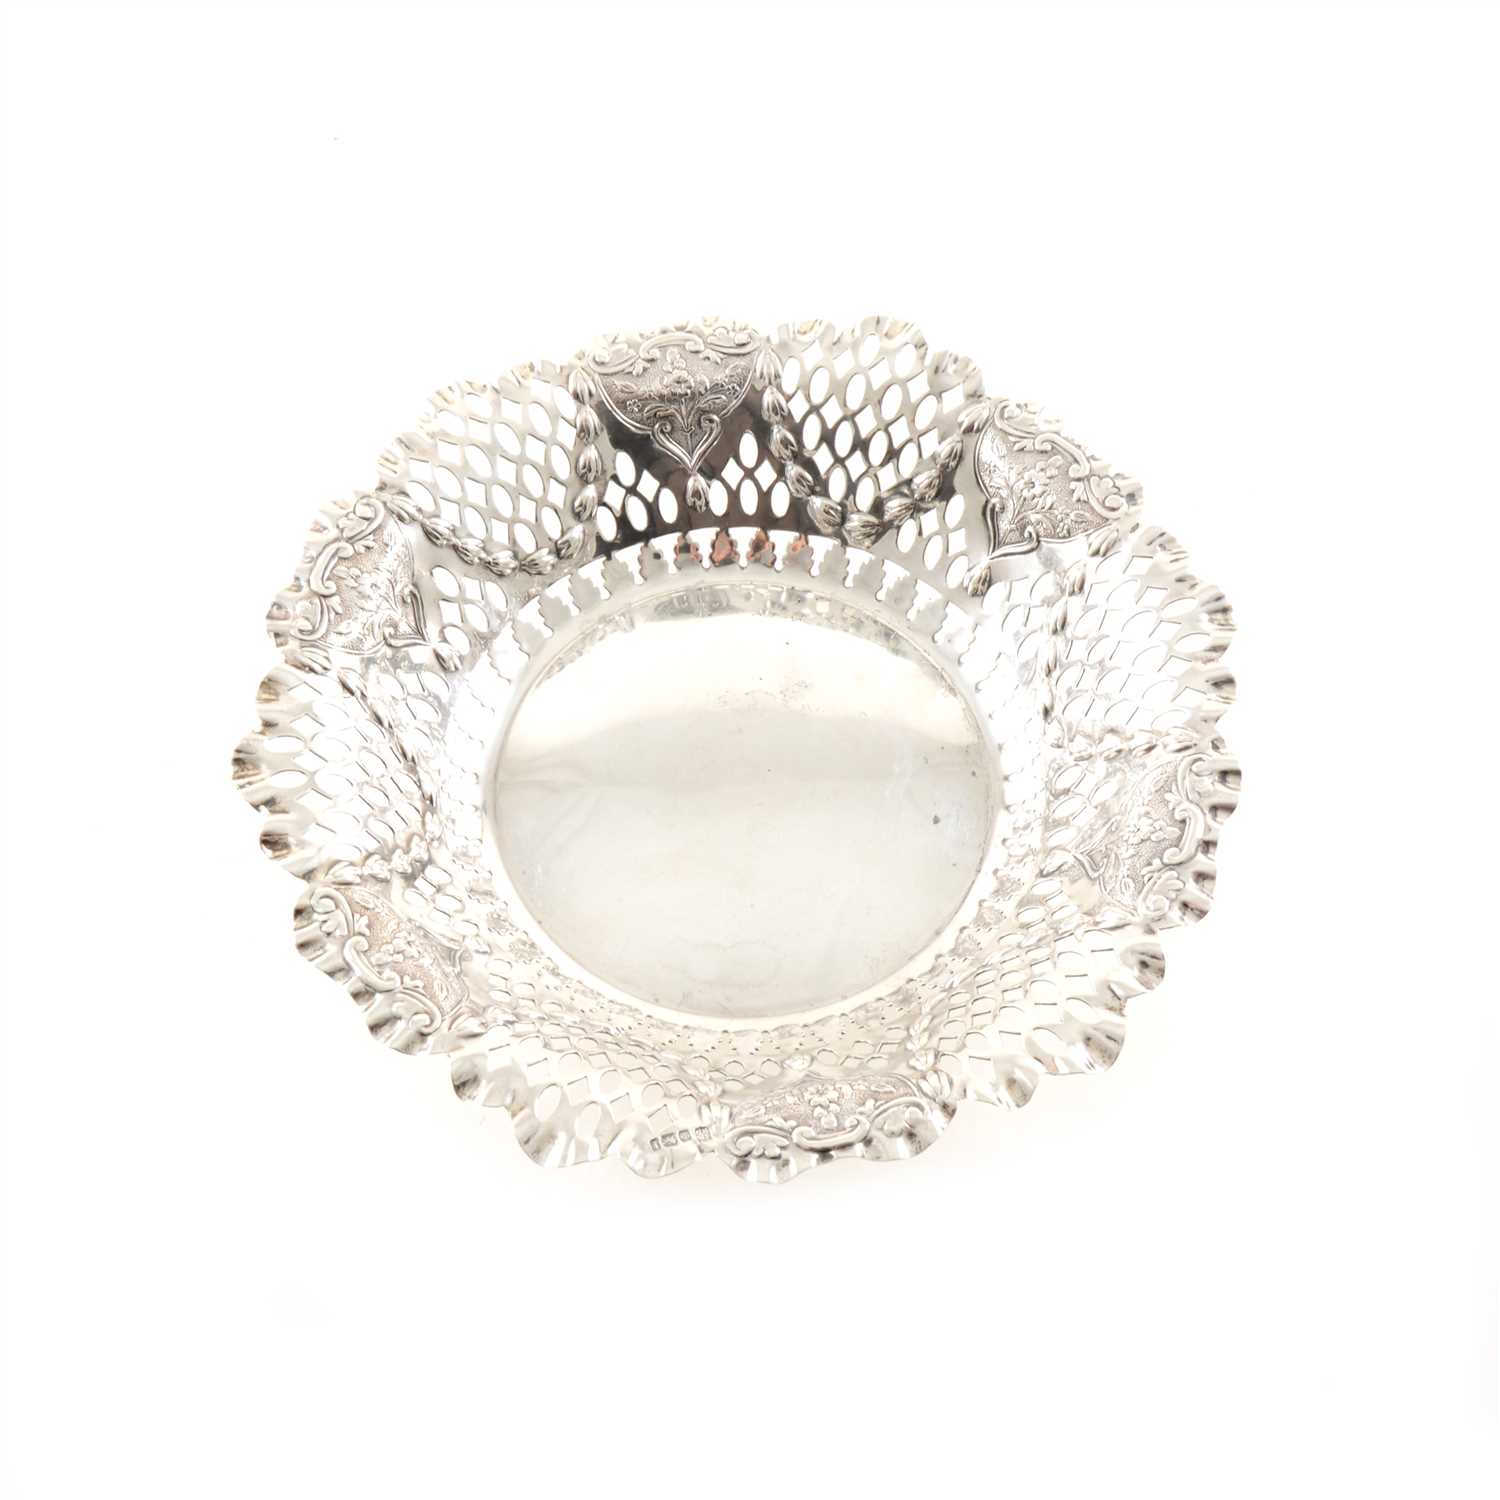 Lot 239 - A pierced silver dish by James Deakin & Sons (John & William F Deakin)